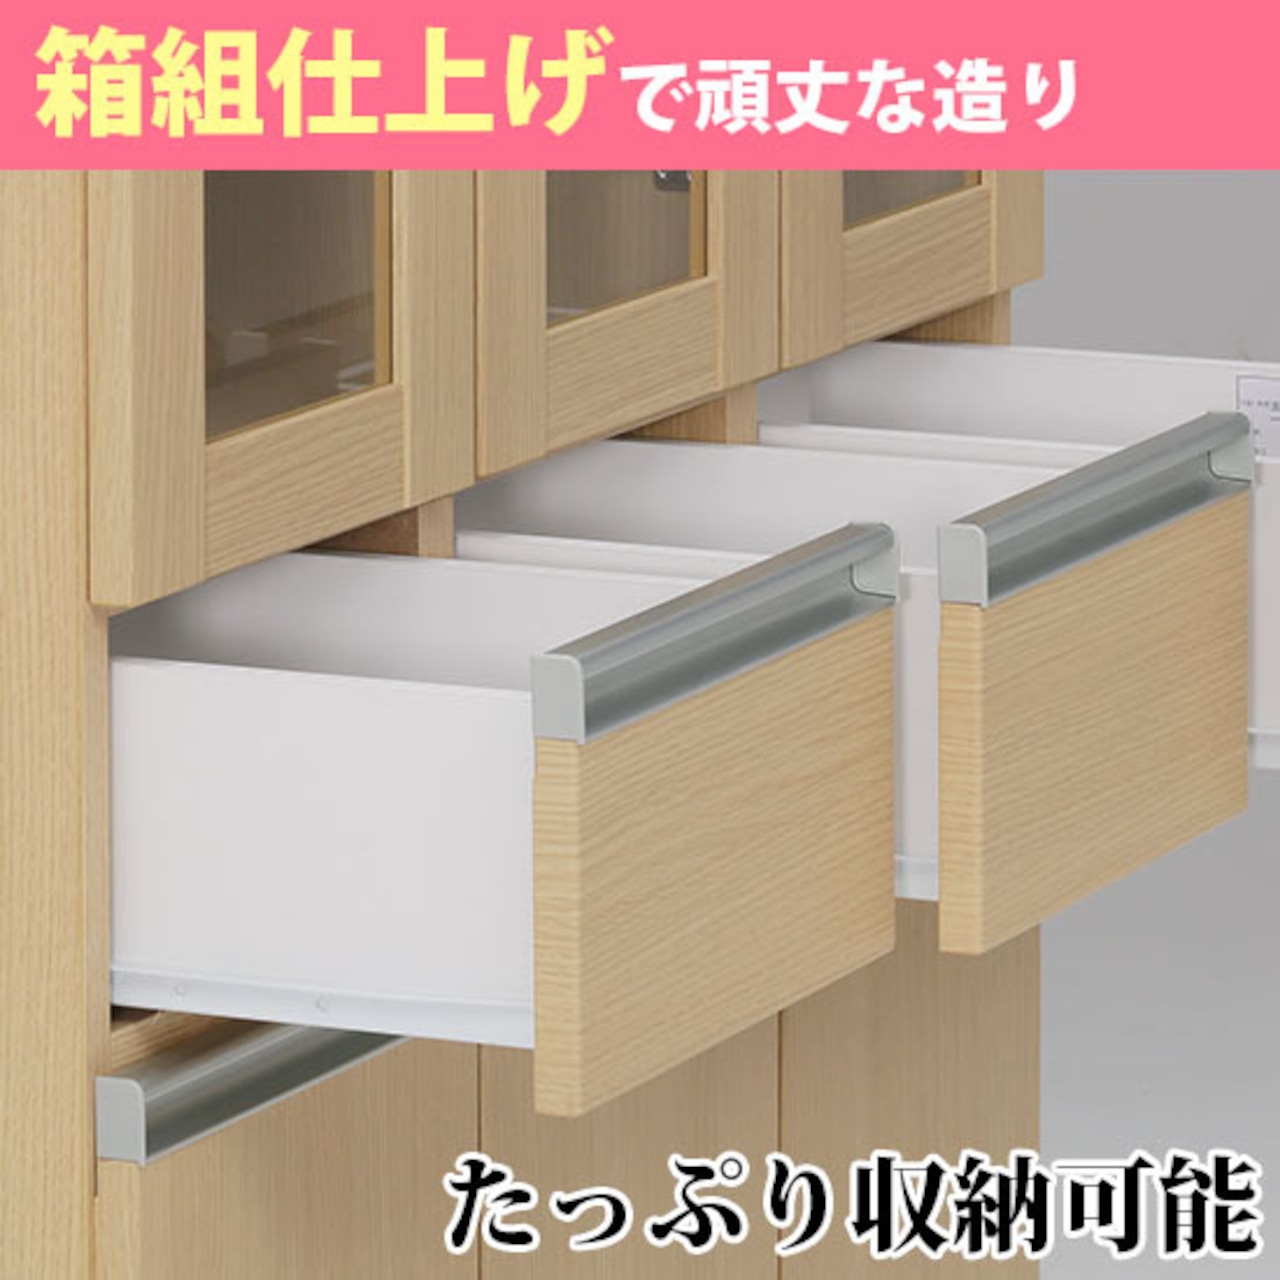 【幅60】キッチンボード ダイニングボード 食器棚 収納 木目調 (全3色)